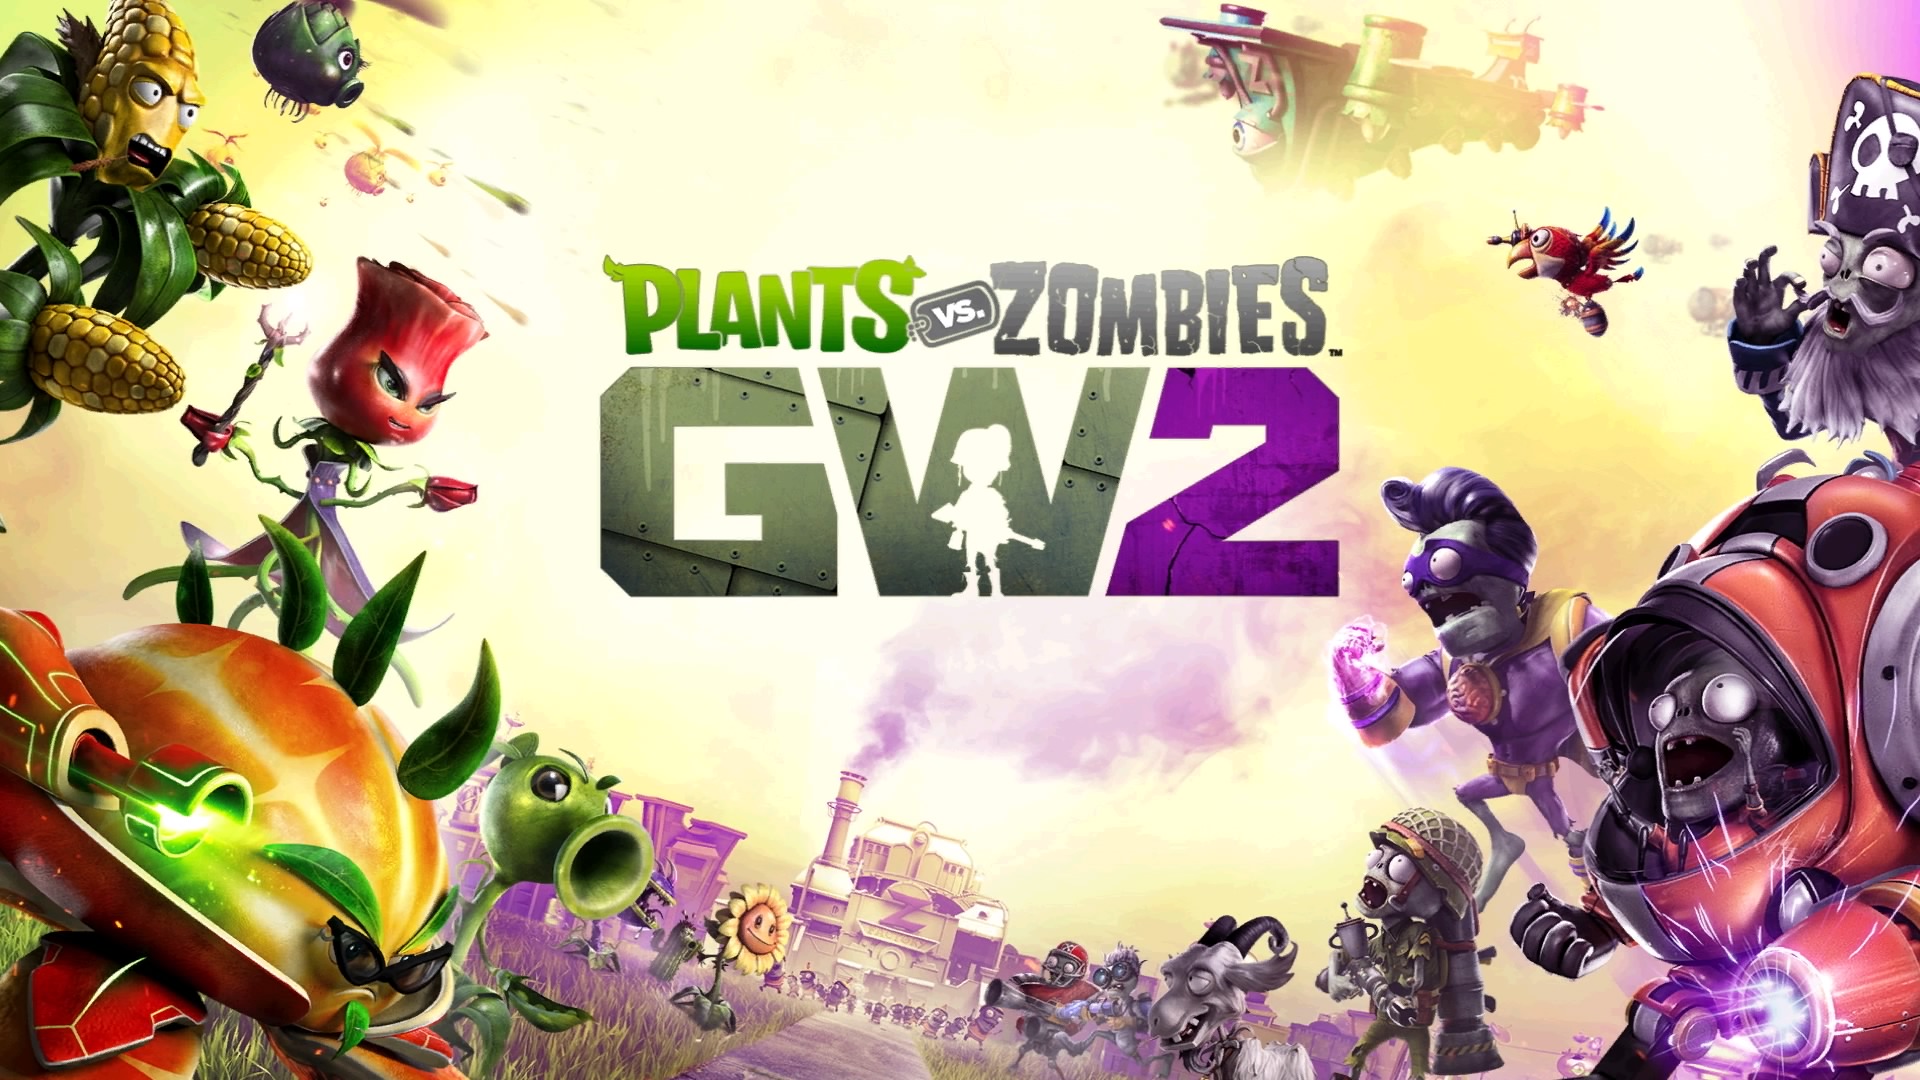  Plants vs. Zombies Garden Warfare 2 - Xbox One